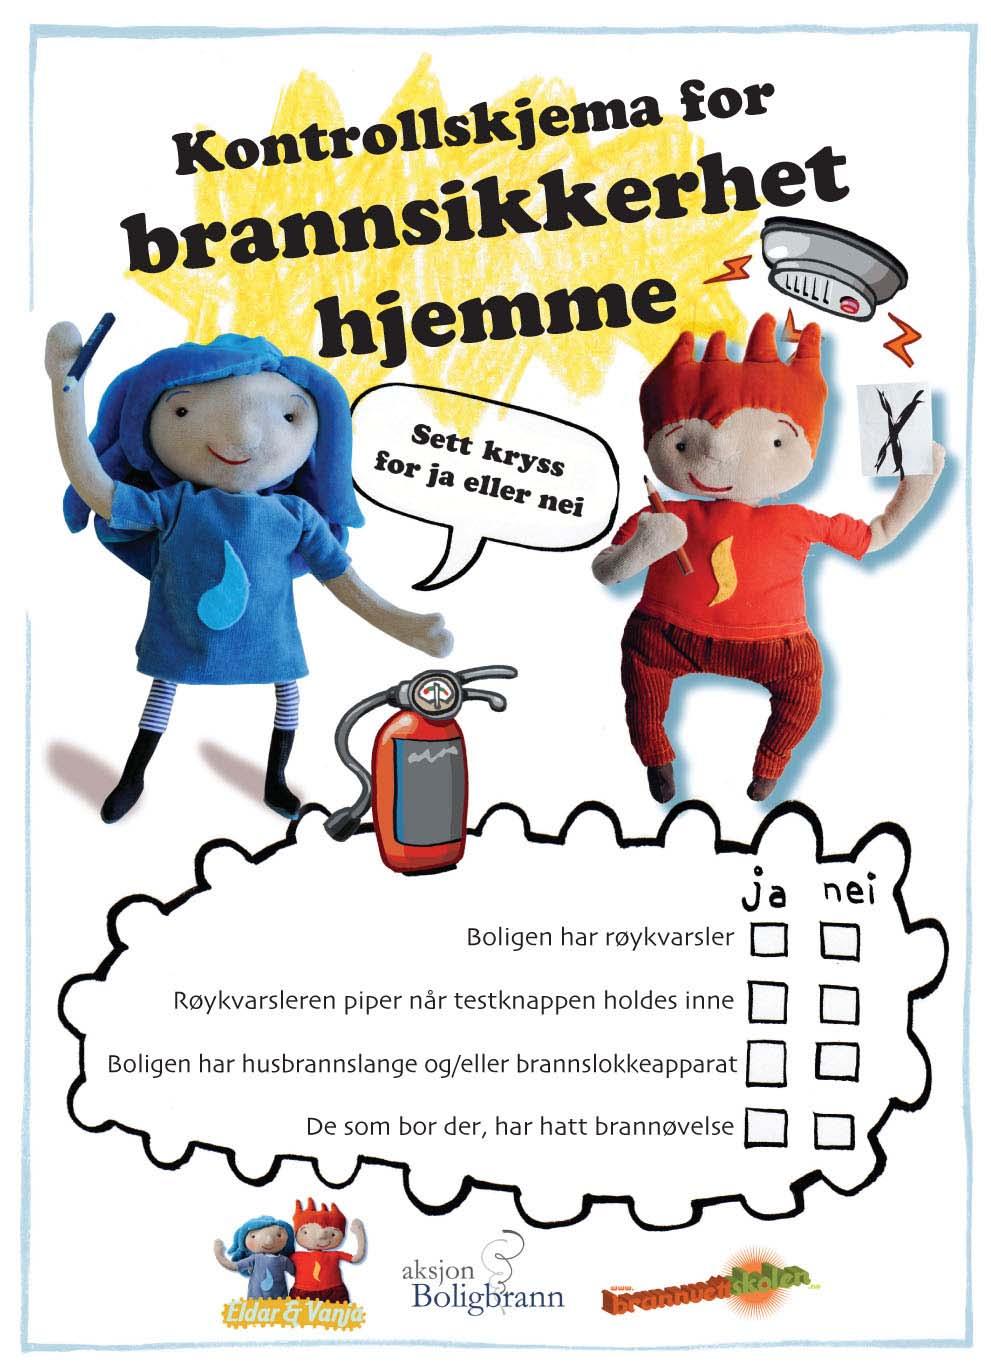 Kontrollskjemaet Skjemaet elevene skal bruke, ser slik ut: Skjemaet finnes på bokmål og nynorsk.